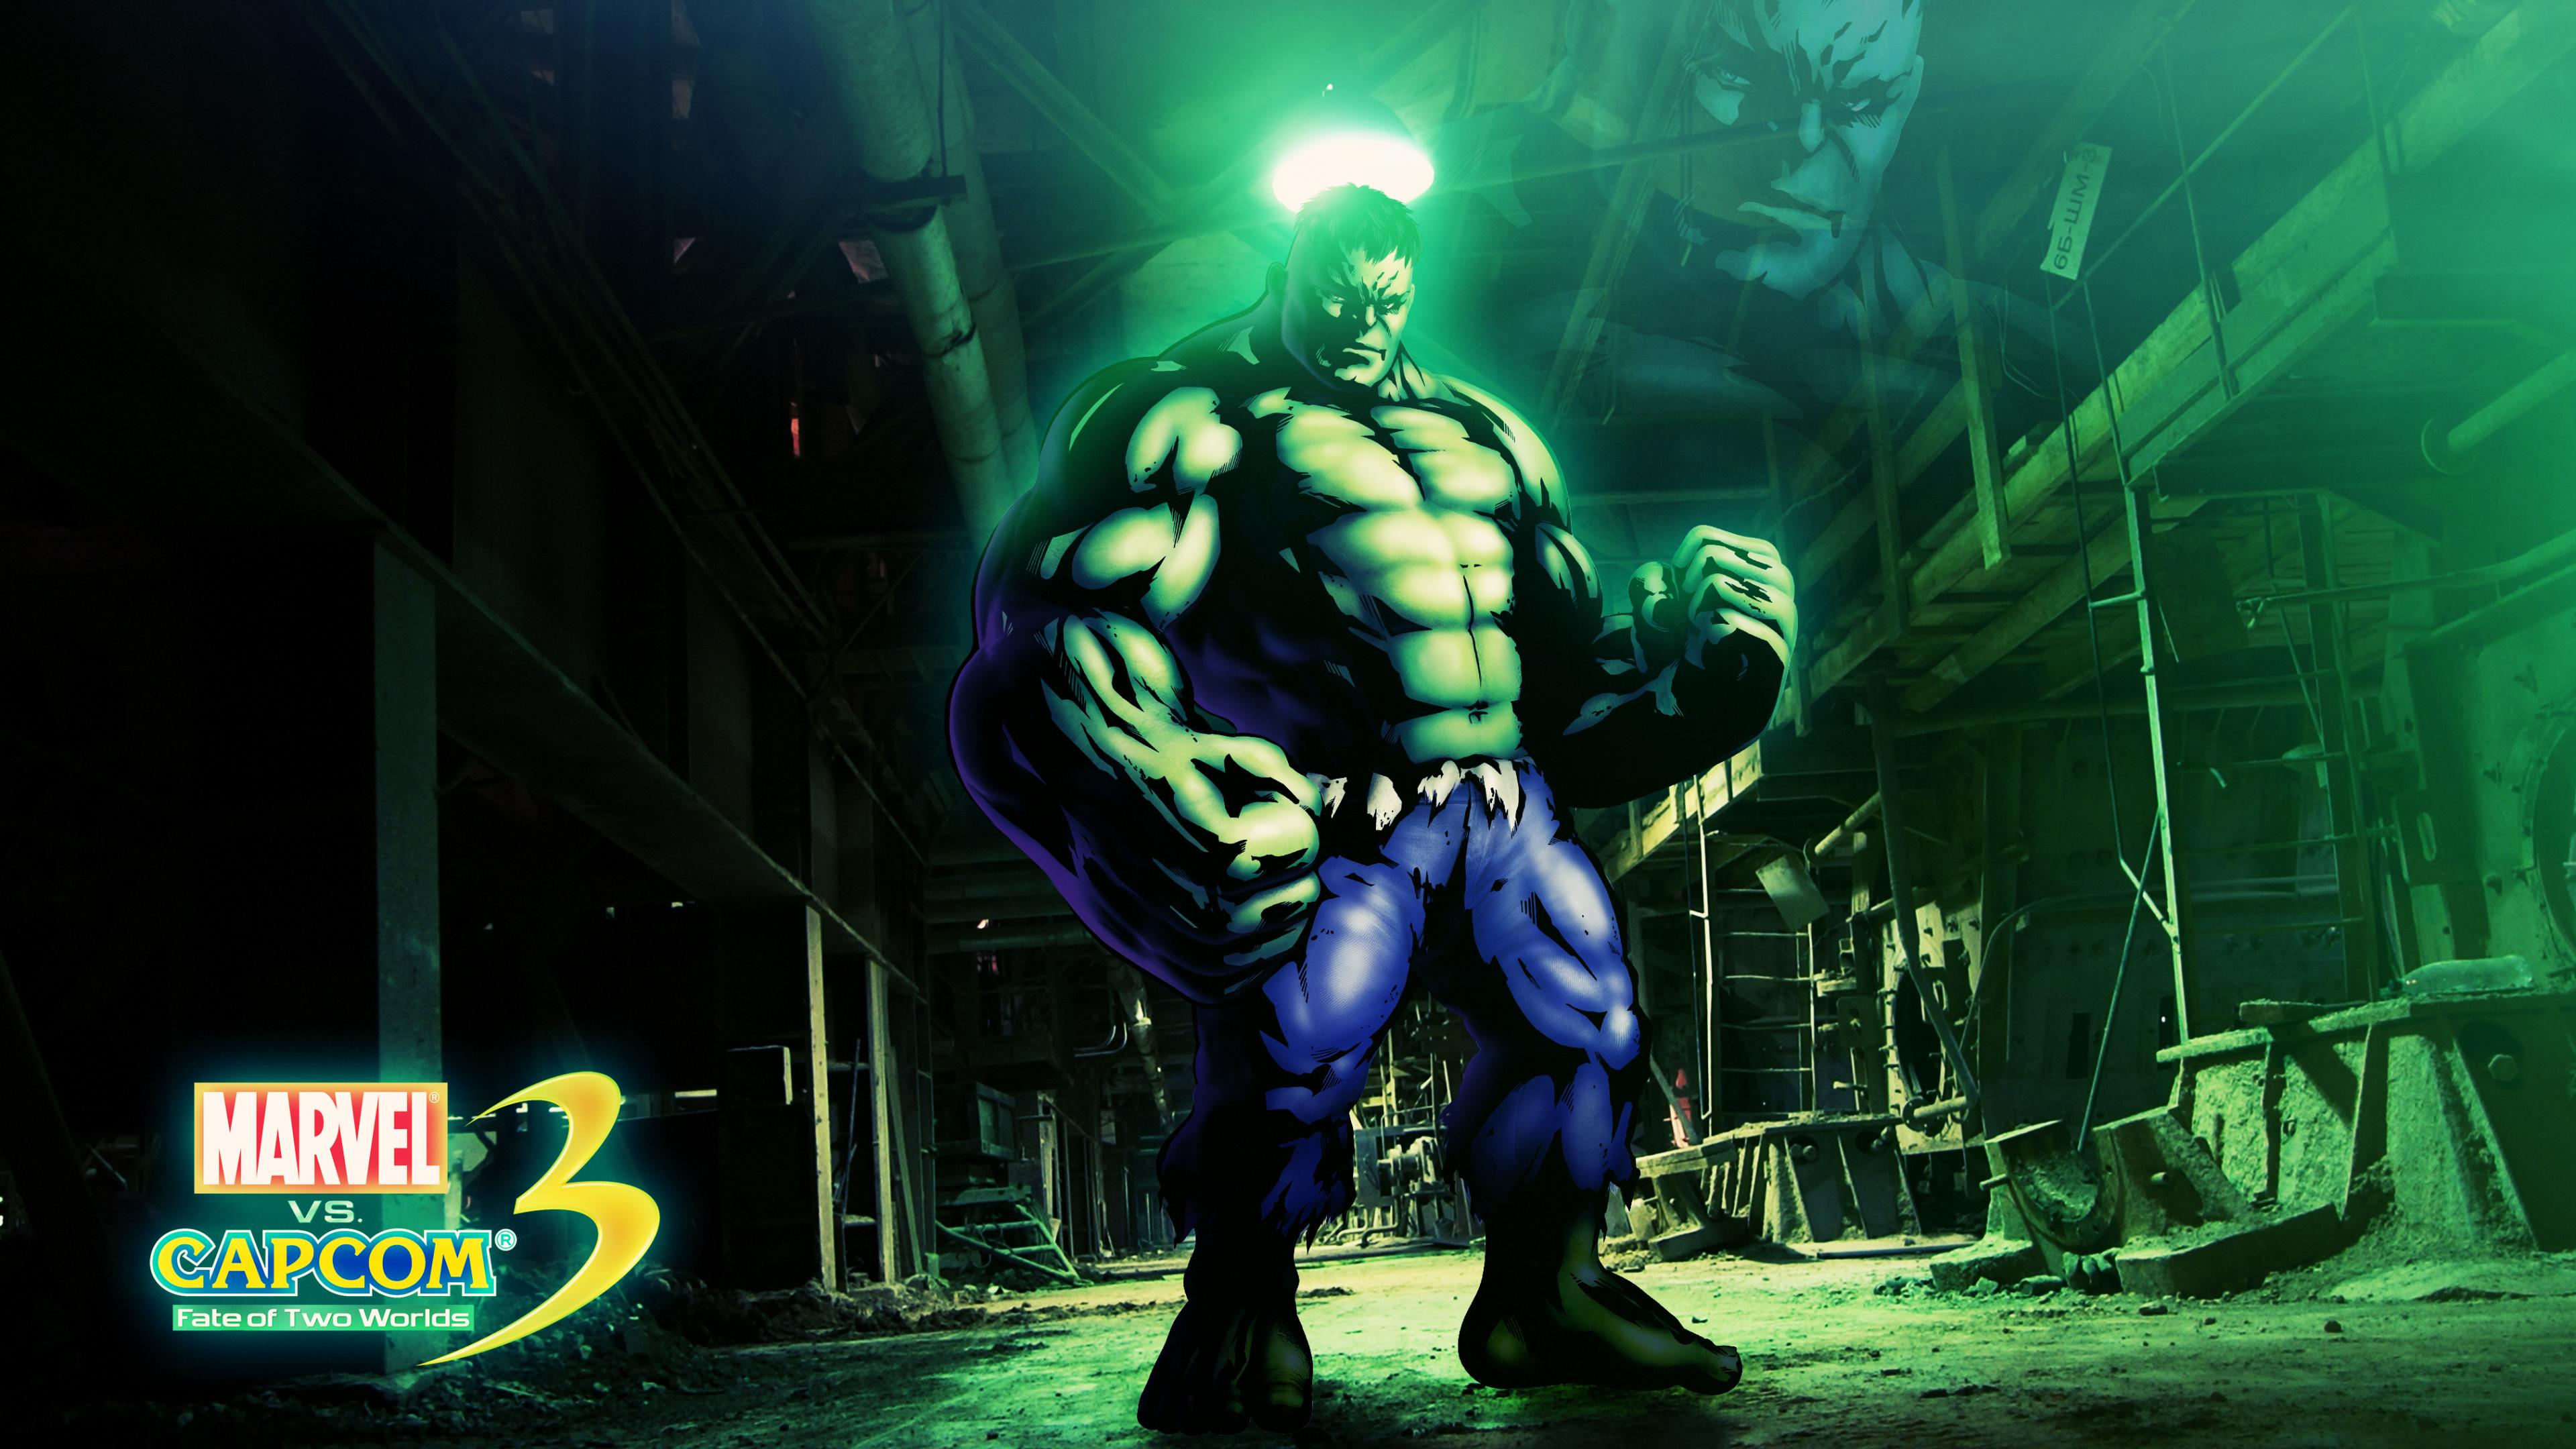 hulk wallpaper,gioco di avventura e azione,personaggio fittizio,supereroe,gioco per pc,action figure